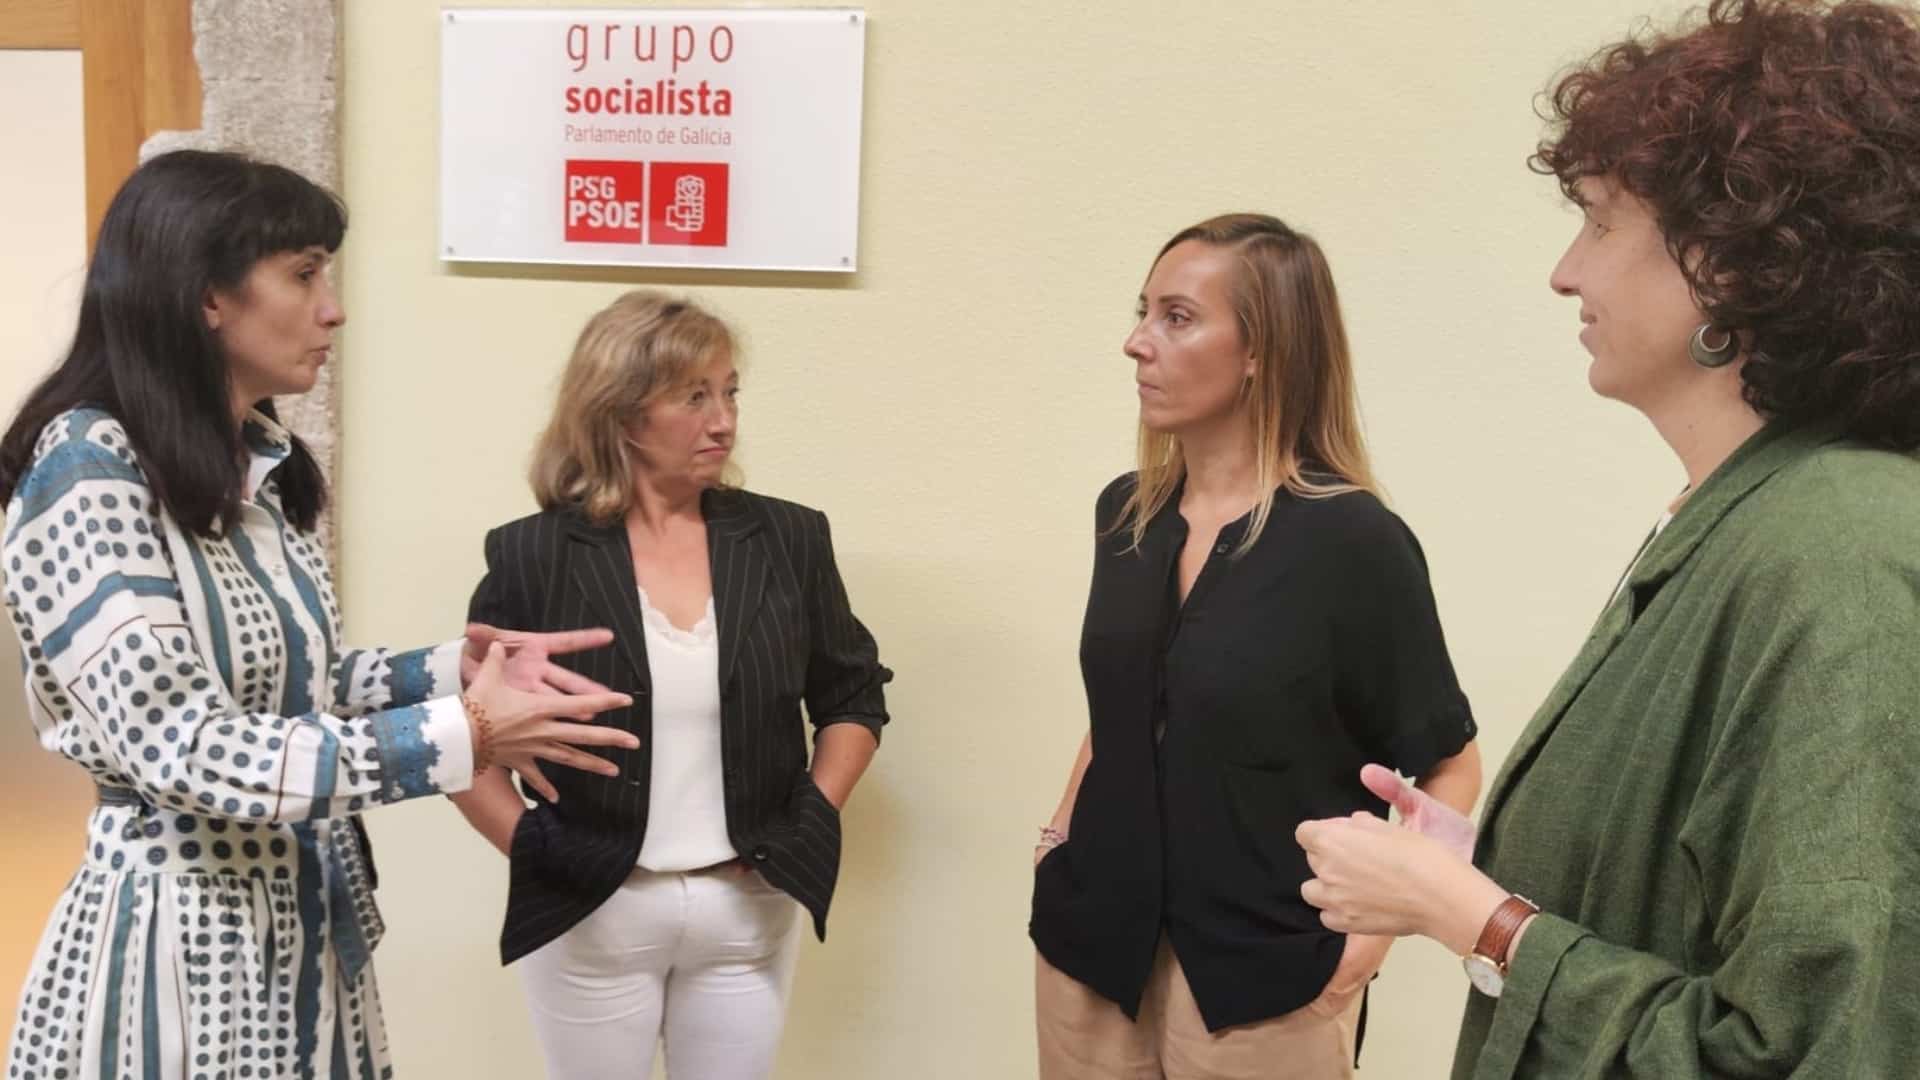 La reunión de la teniente de alcalde, Mar García, y la concelleira de Educación, Teresa Duro, reunidas con la diputada socialista Noa Díaz | CONCELLO DE NEGREIRA